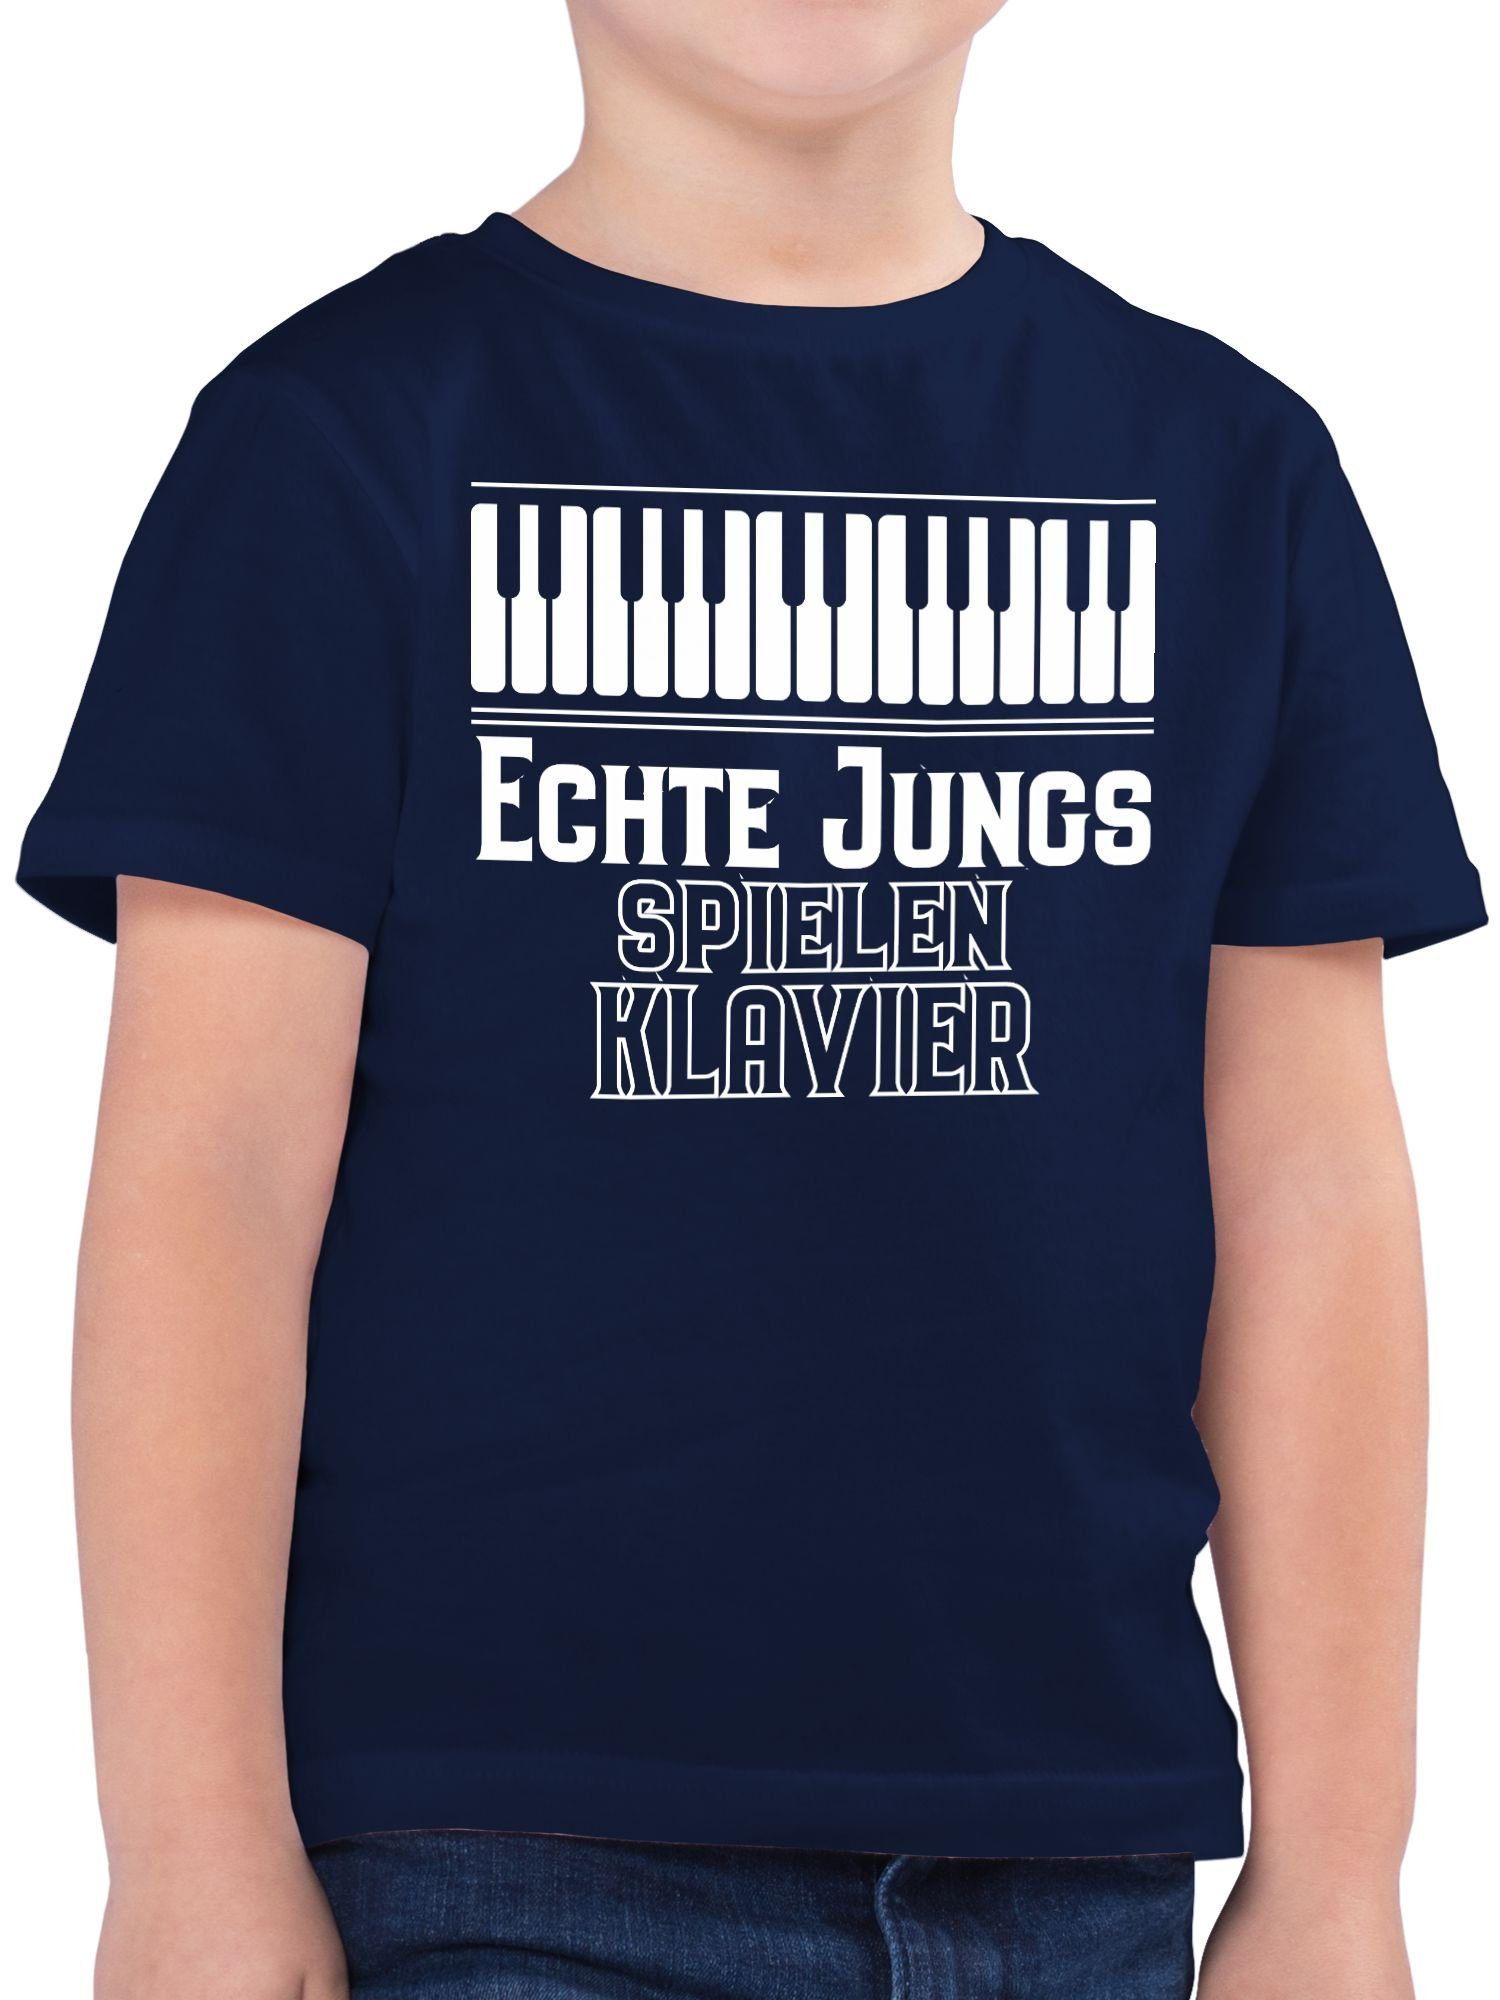 Statement spielen Echte 1 Jungs T-Shirt Dunkelblau Klavier Sprüche Kinder Shirtracer